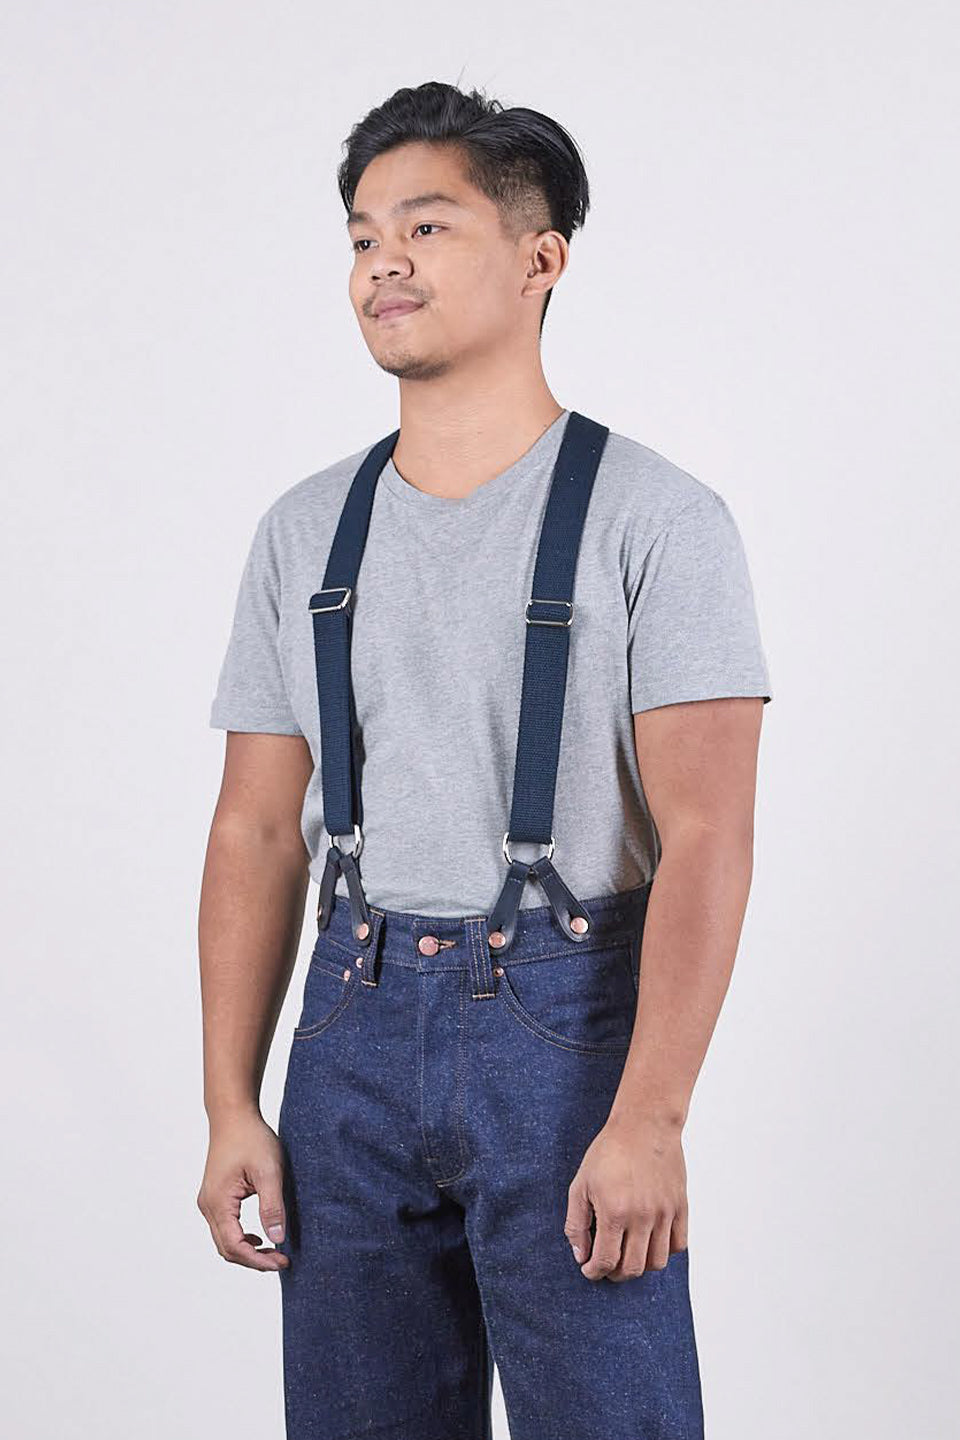 Amazon.com: PONERY Mens Braces X Shape - 1Pc 2.5 * 125Cm Men's Suspender  Elastic Wide Suspenders Adjustable 2 Clips Strap X Type Braces Decorative  Male Jockstrap,Black : Everything Else